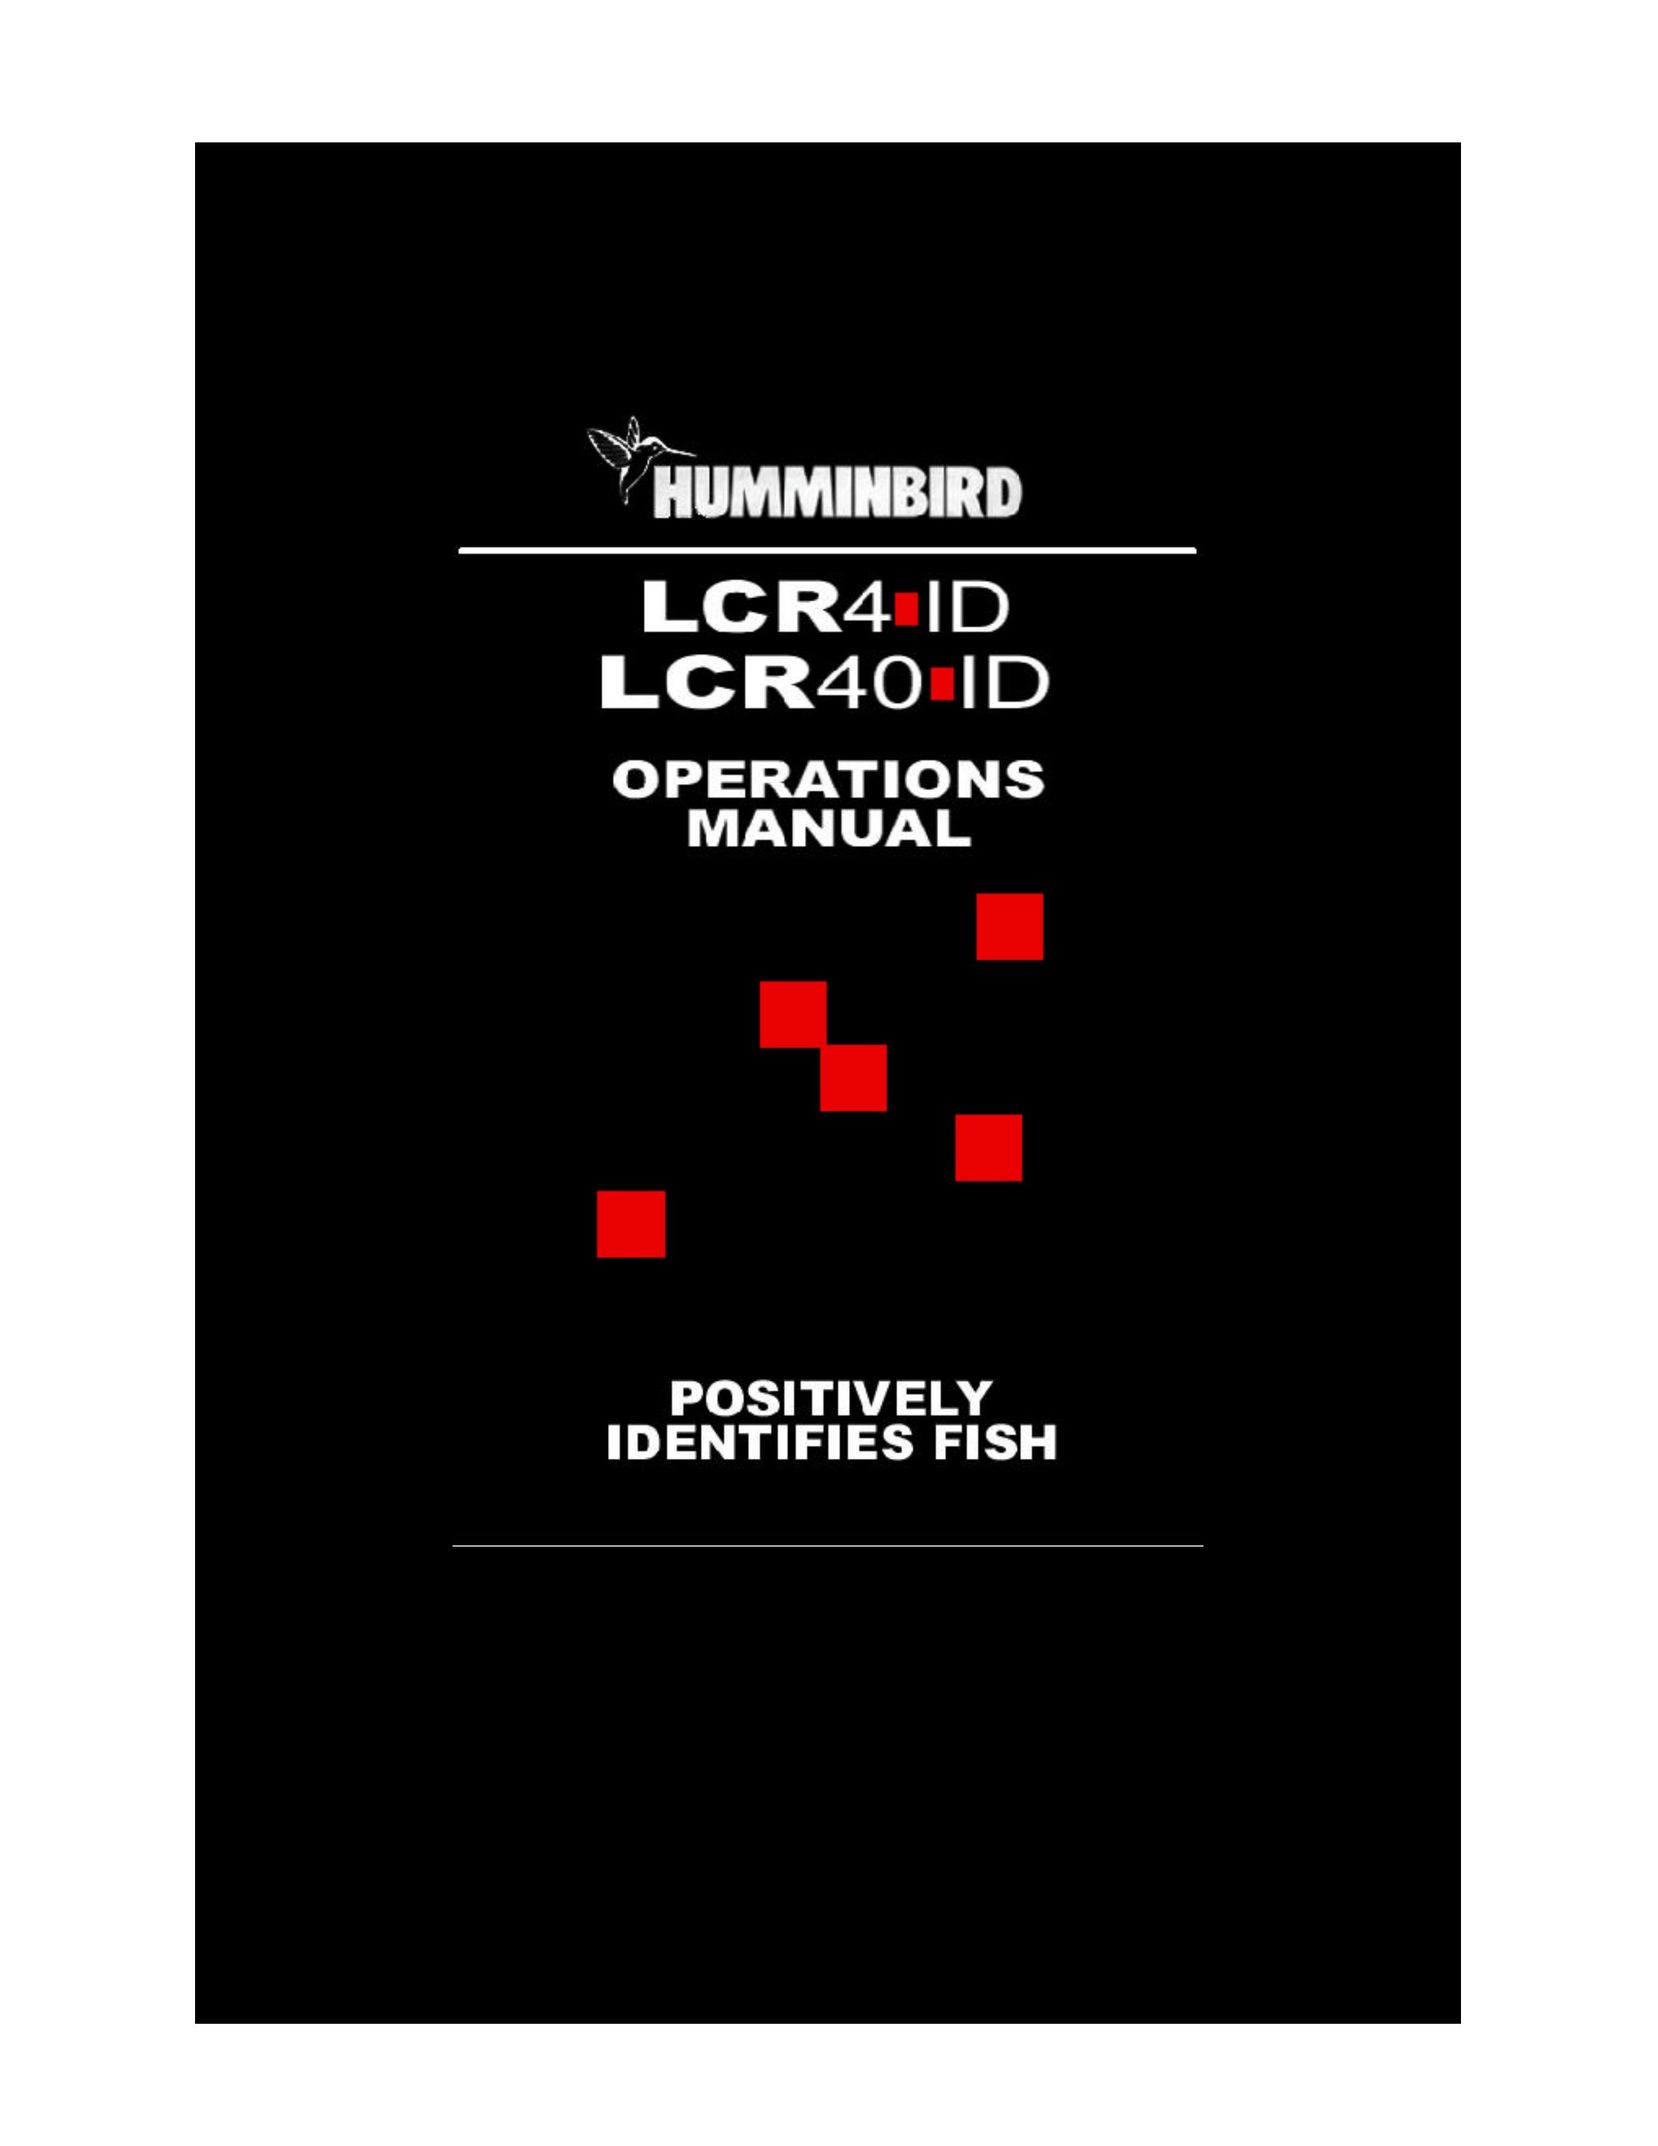 Humminbird LCR4 ID Laminator User Manual